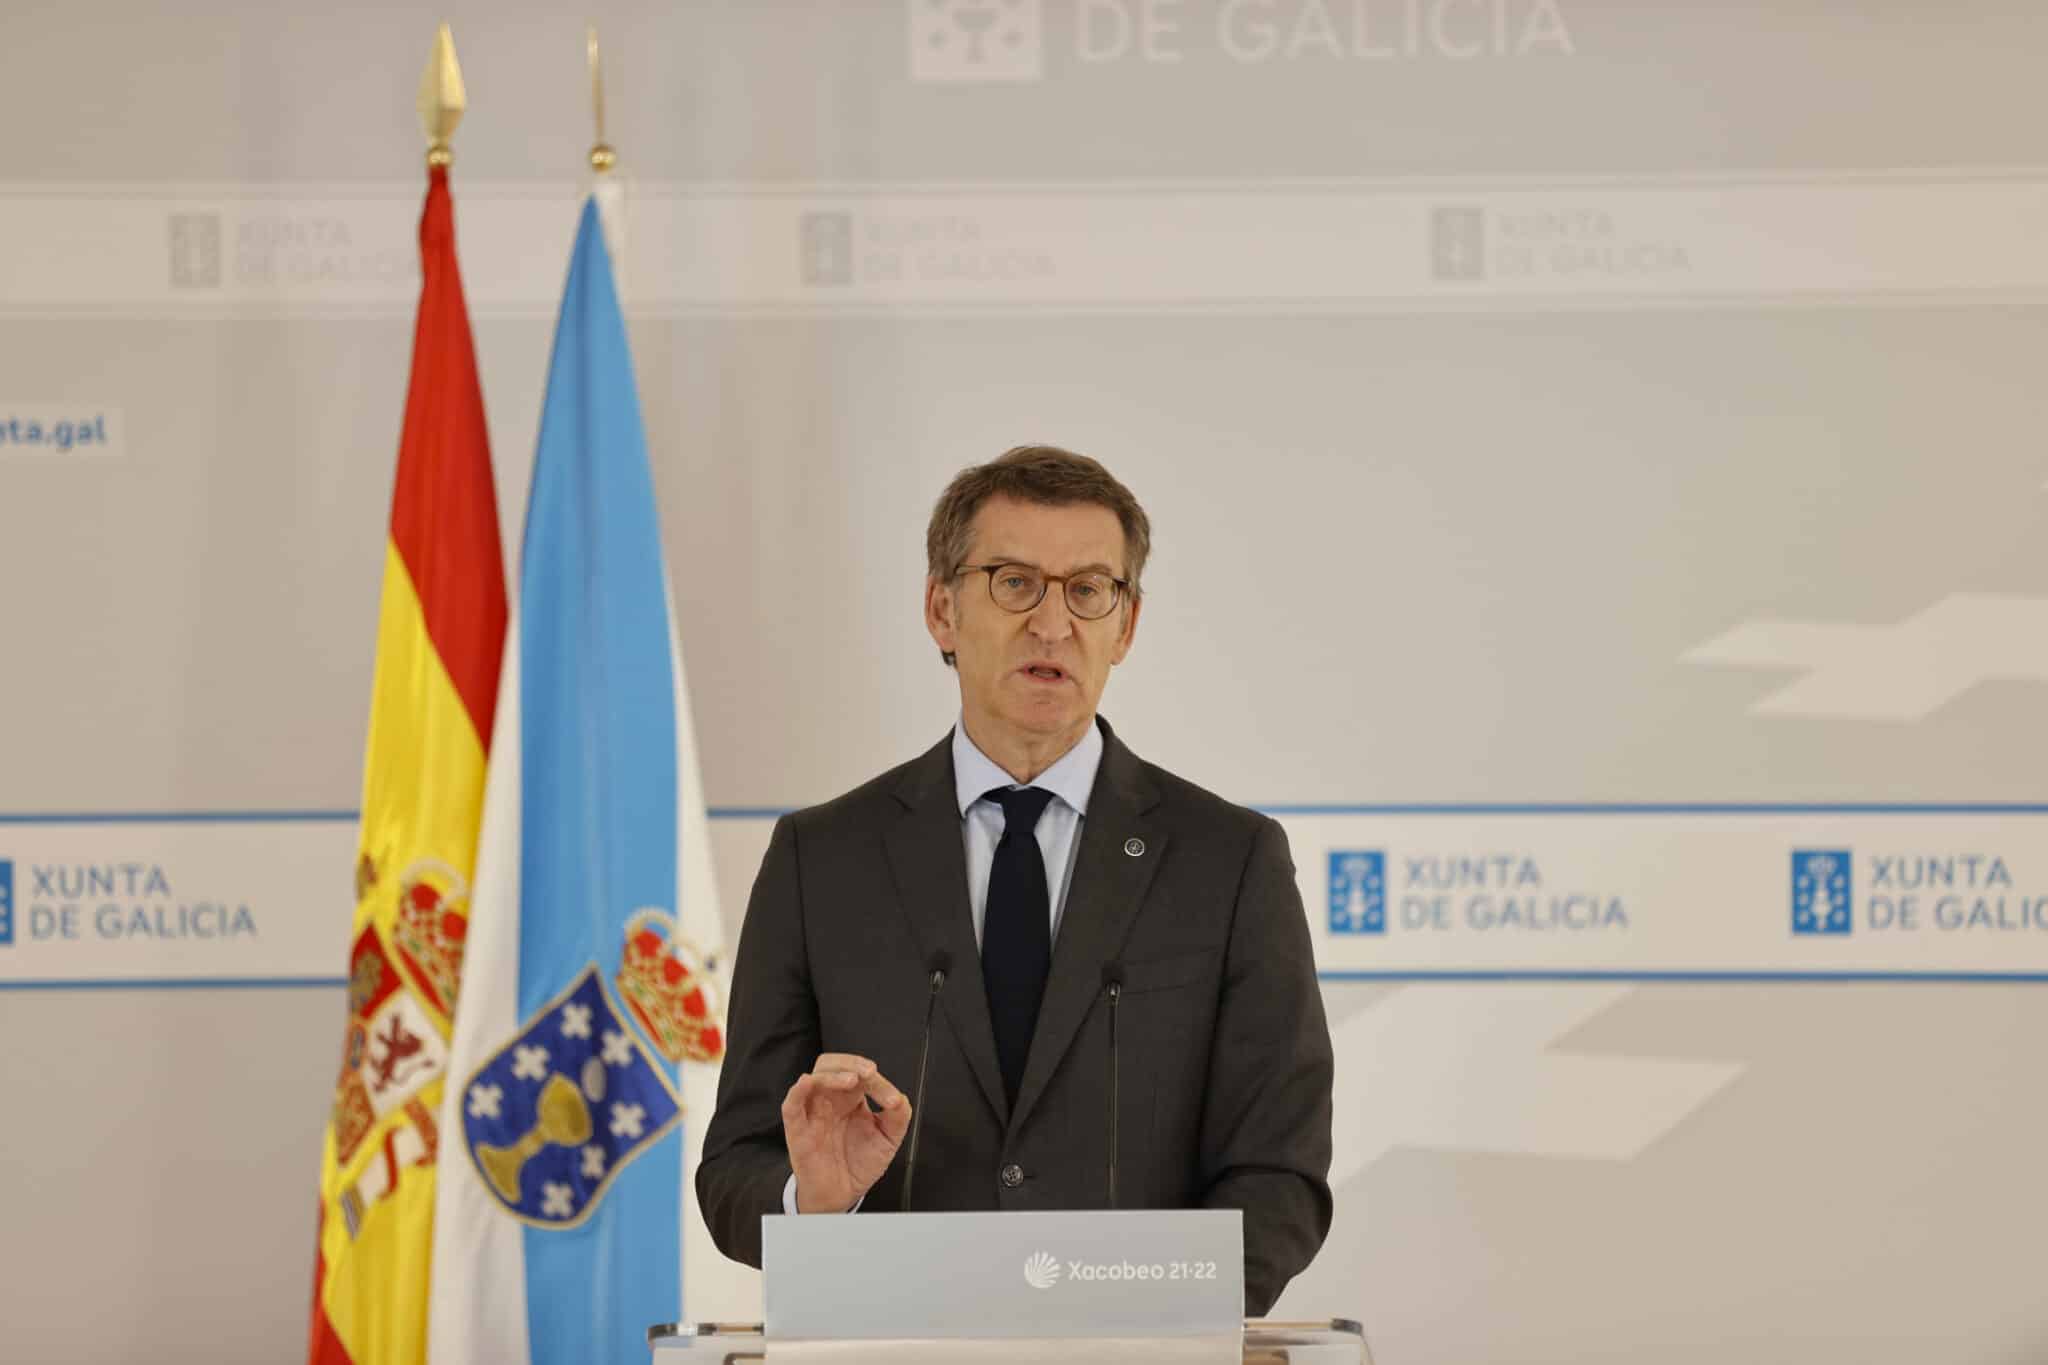 El presidente de la Xunta, Alberto Núñez Feijóo, comparece ante los medios de comunicación tras haber presidido este viernes la reunión semanal con su equipo de gobierno